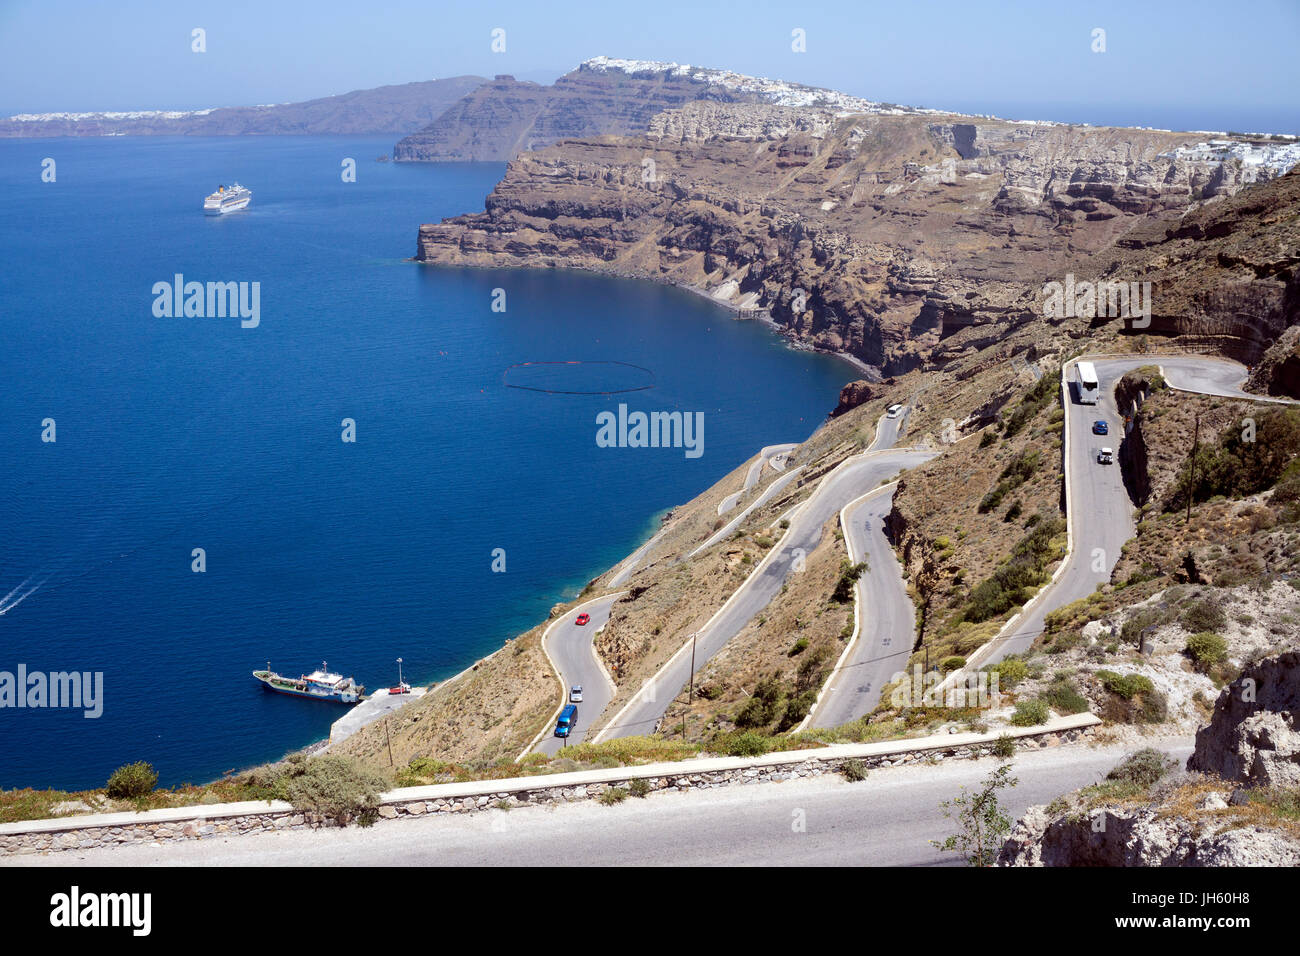 Strasse hinunter zum Faehrhafen Athinios und Blick auf die Caldera, Santorin, Kykladen, Aegaeis, Griechenland, Mittelmeer, Europa | Road down to the f Stock Photo